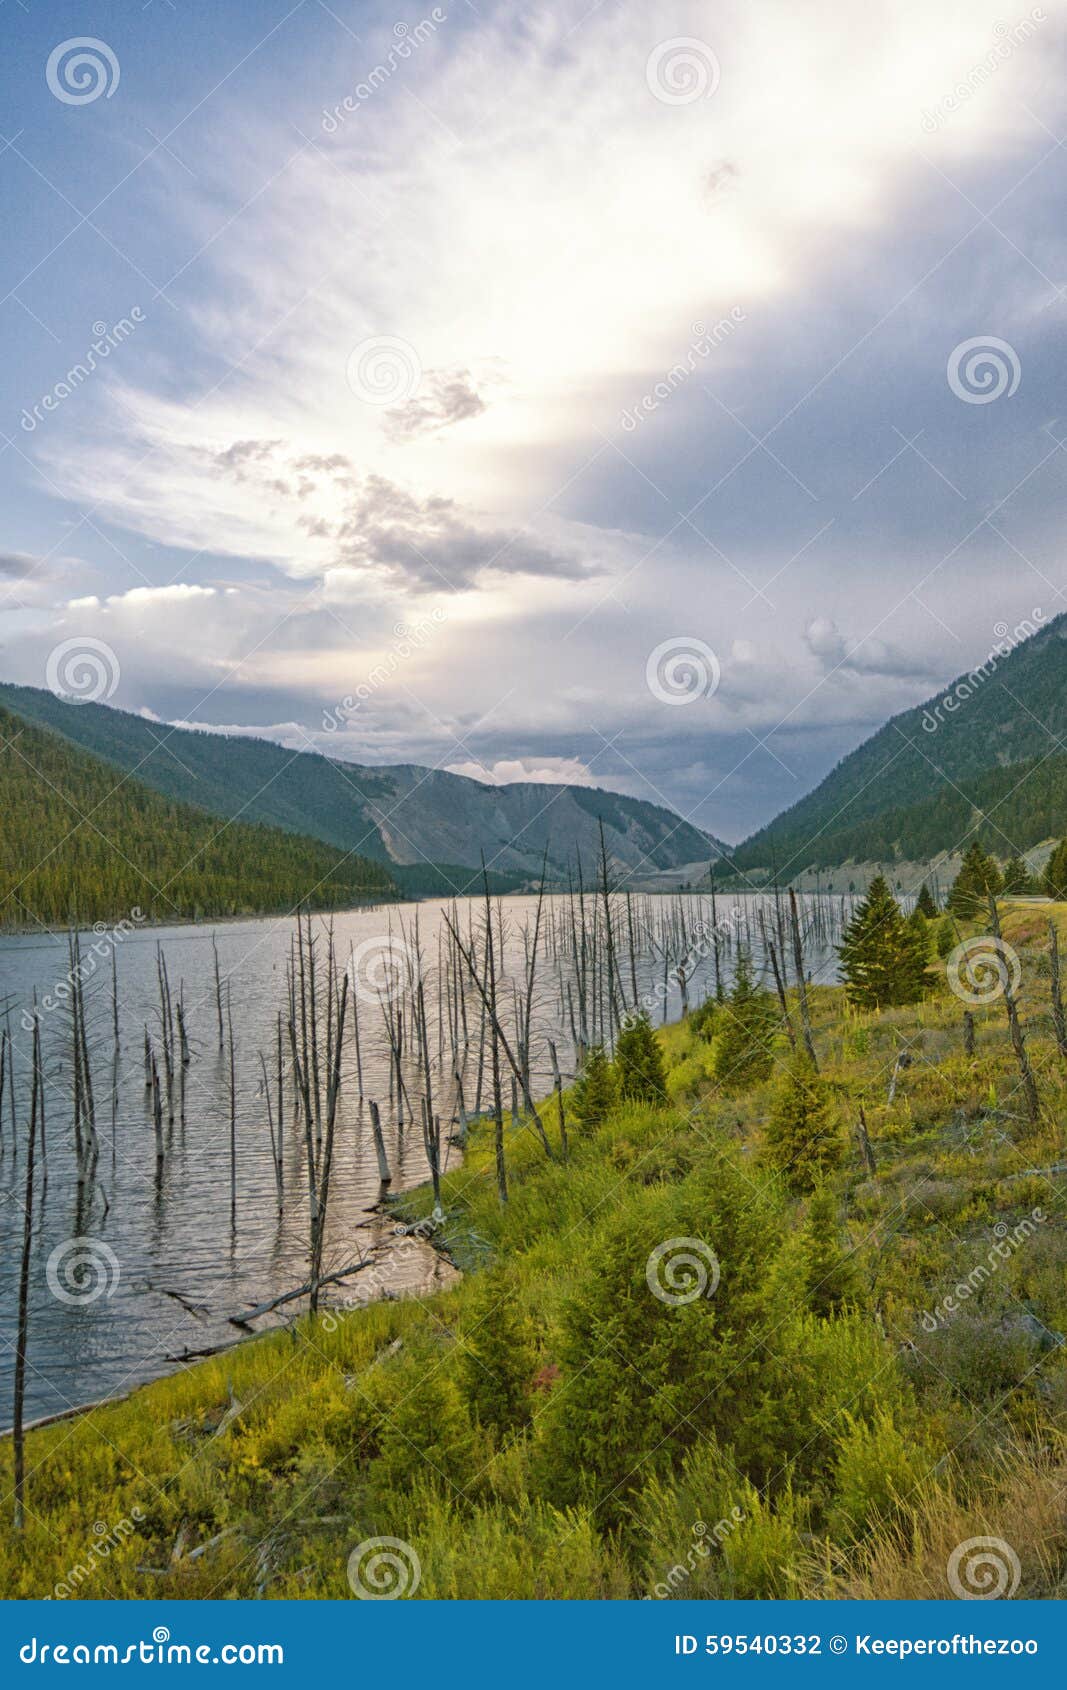 landscape of earthquake lake, montana.